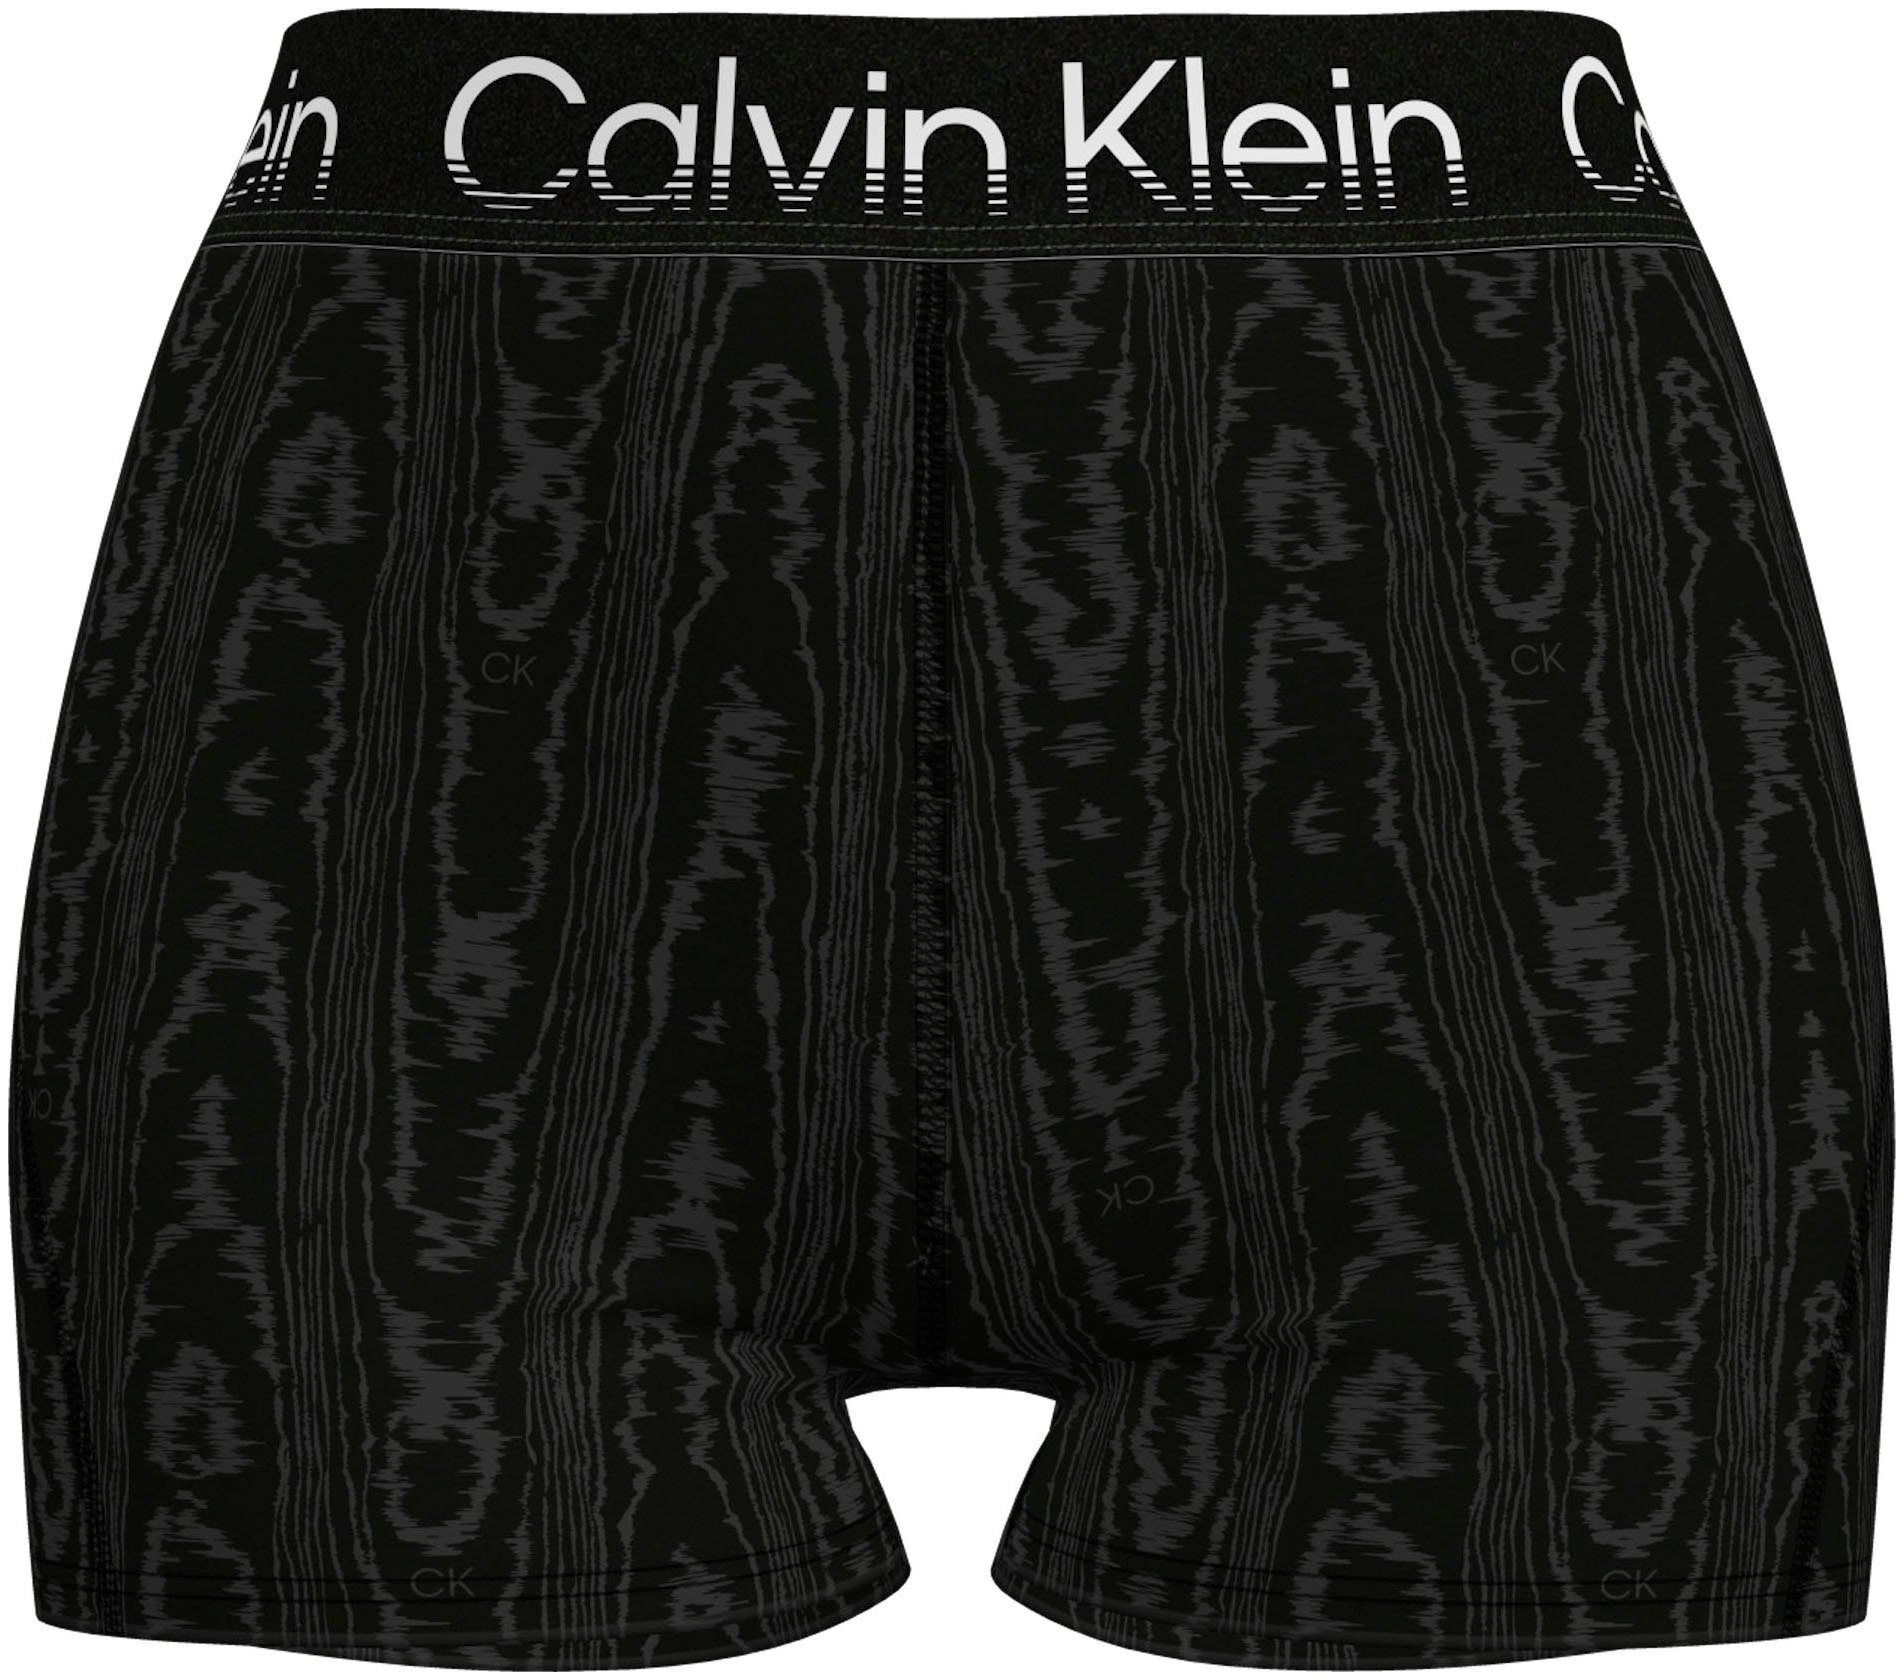 Calvin Klein Short Damen online kaufen | OTTO